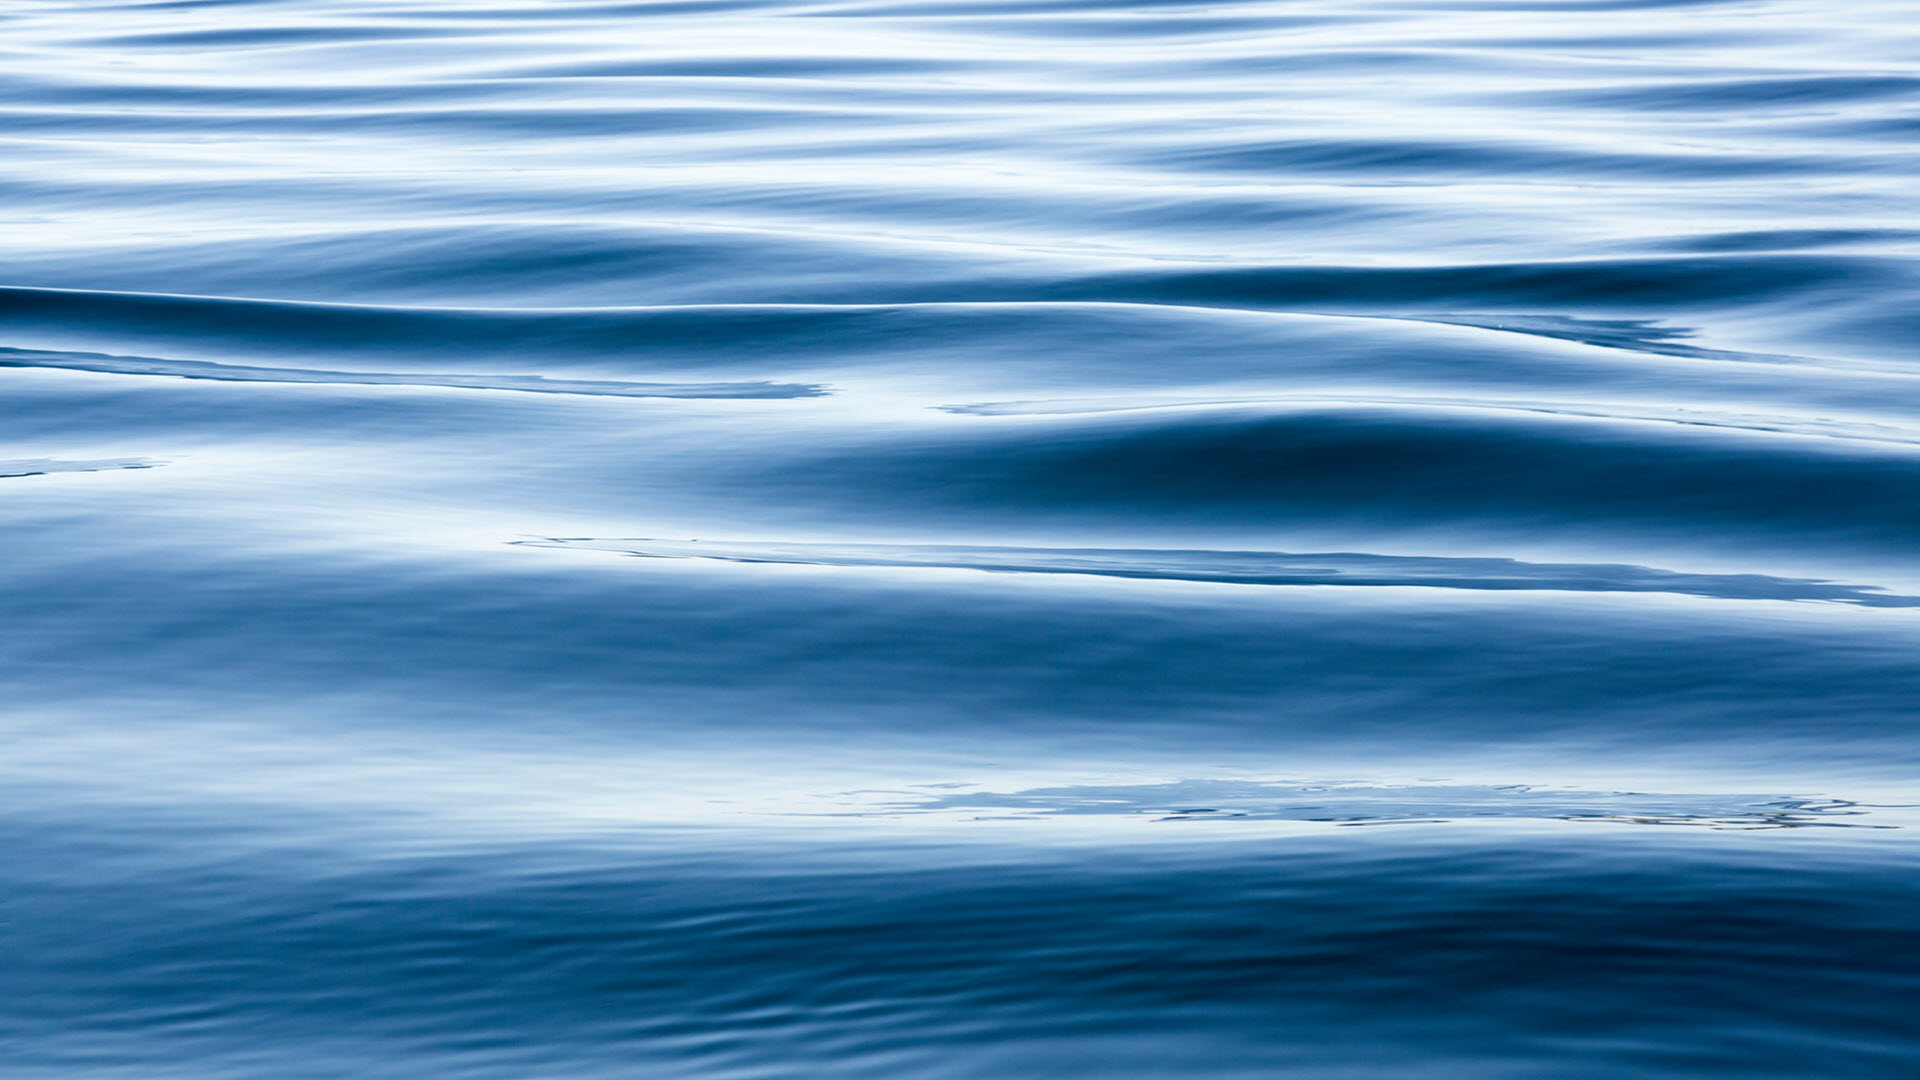 Nền dưới nước, mặt nước, đại: Vector có sẵn (miễn phí bản quyền) 1445522549  | Shutterstock